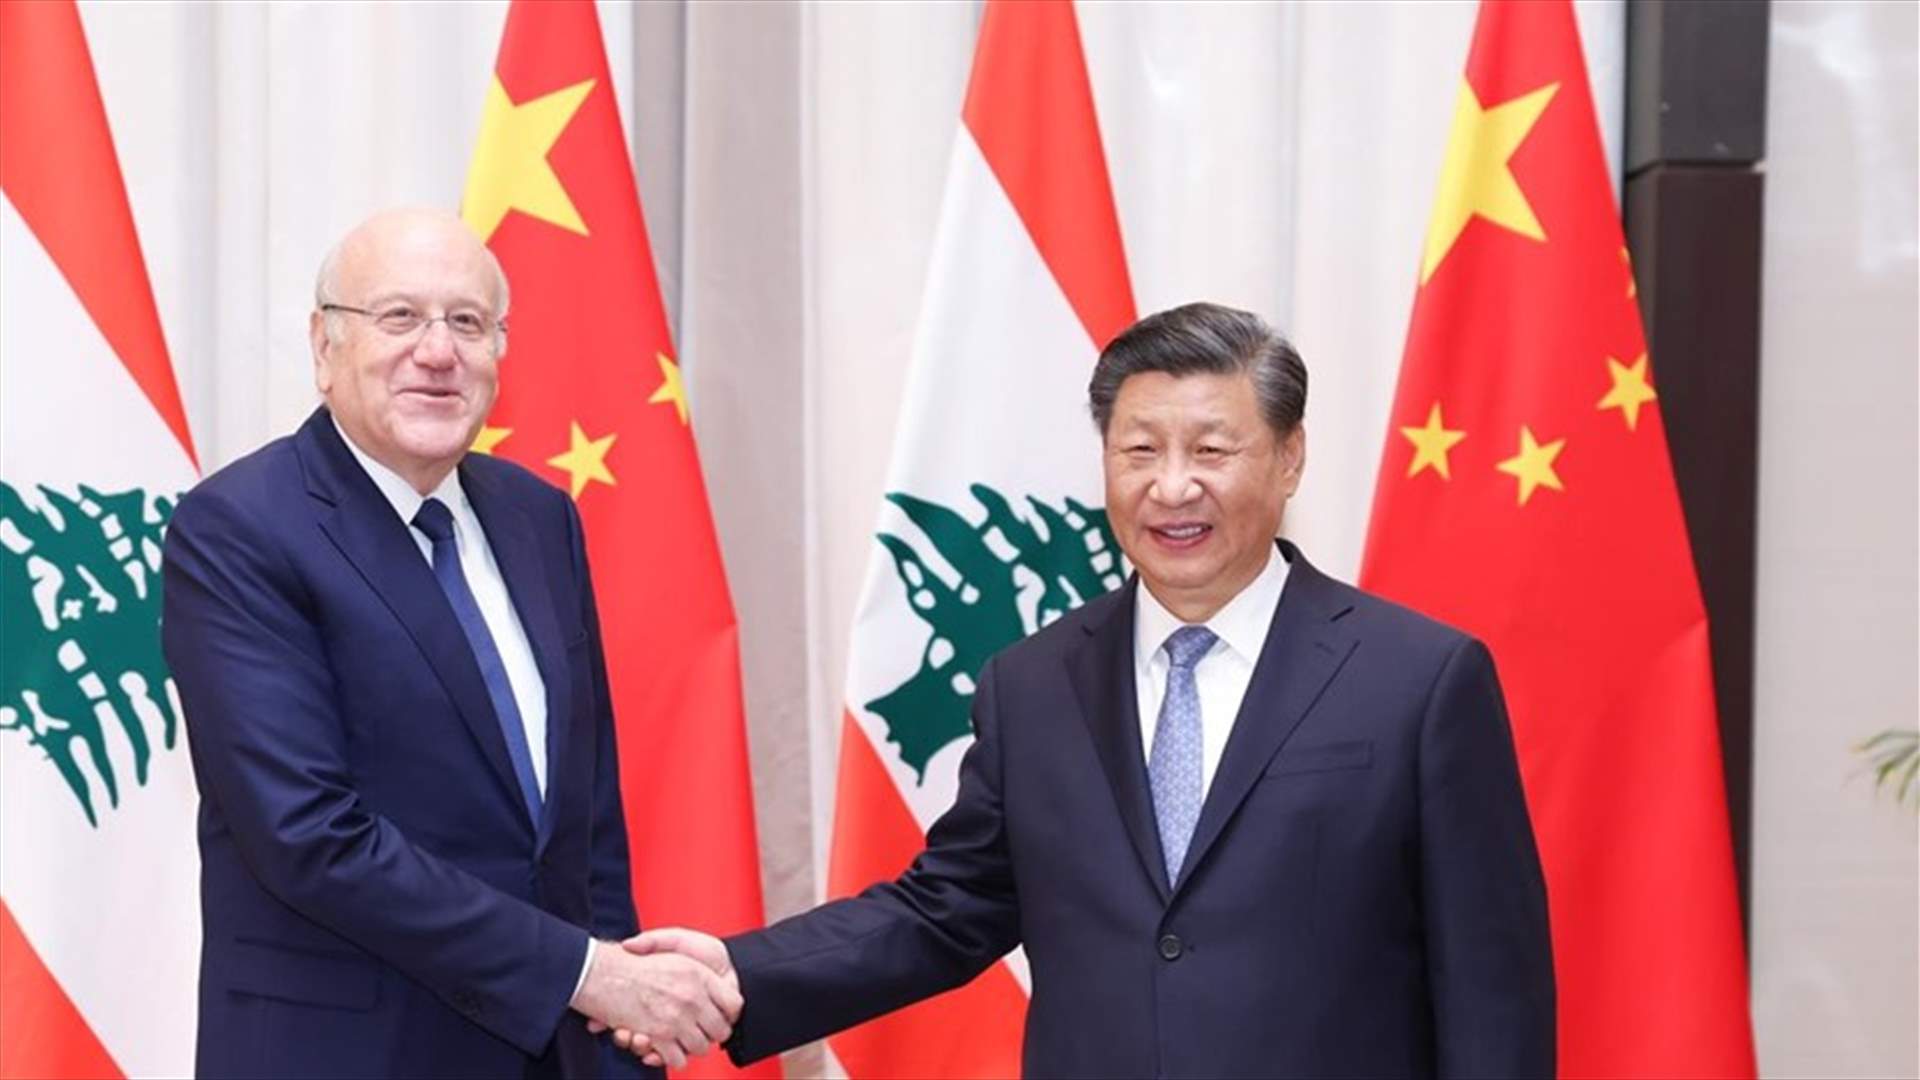 ميقاتي التقى الرئيس الصيني: لبنان يتطلع الى المزيد من الاستثمارات الصينية لاسيما في مجال البنى التحتية